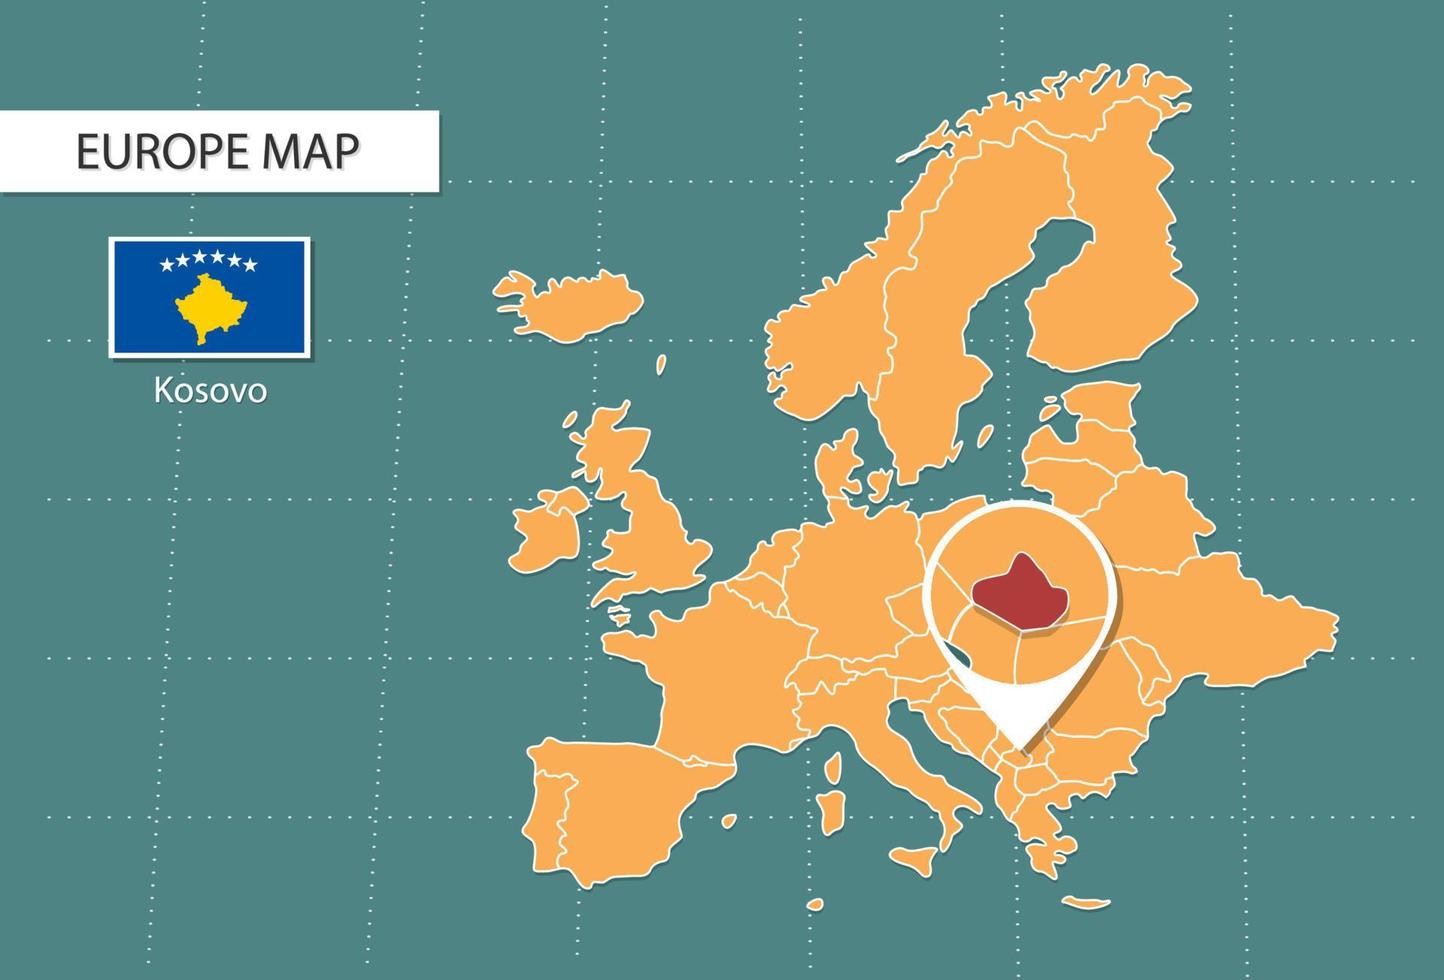 kosovo Karta i Europa zoom version, ikoner som visar kosovo plats och flaggor. vektor